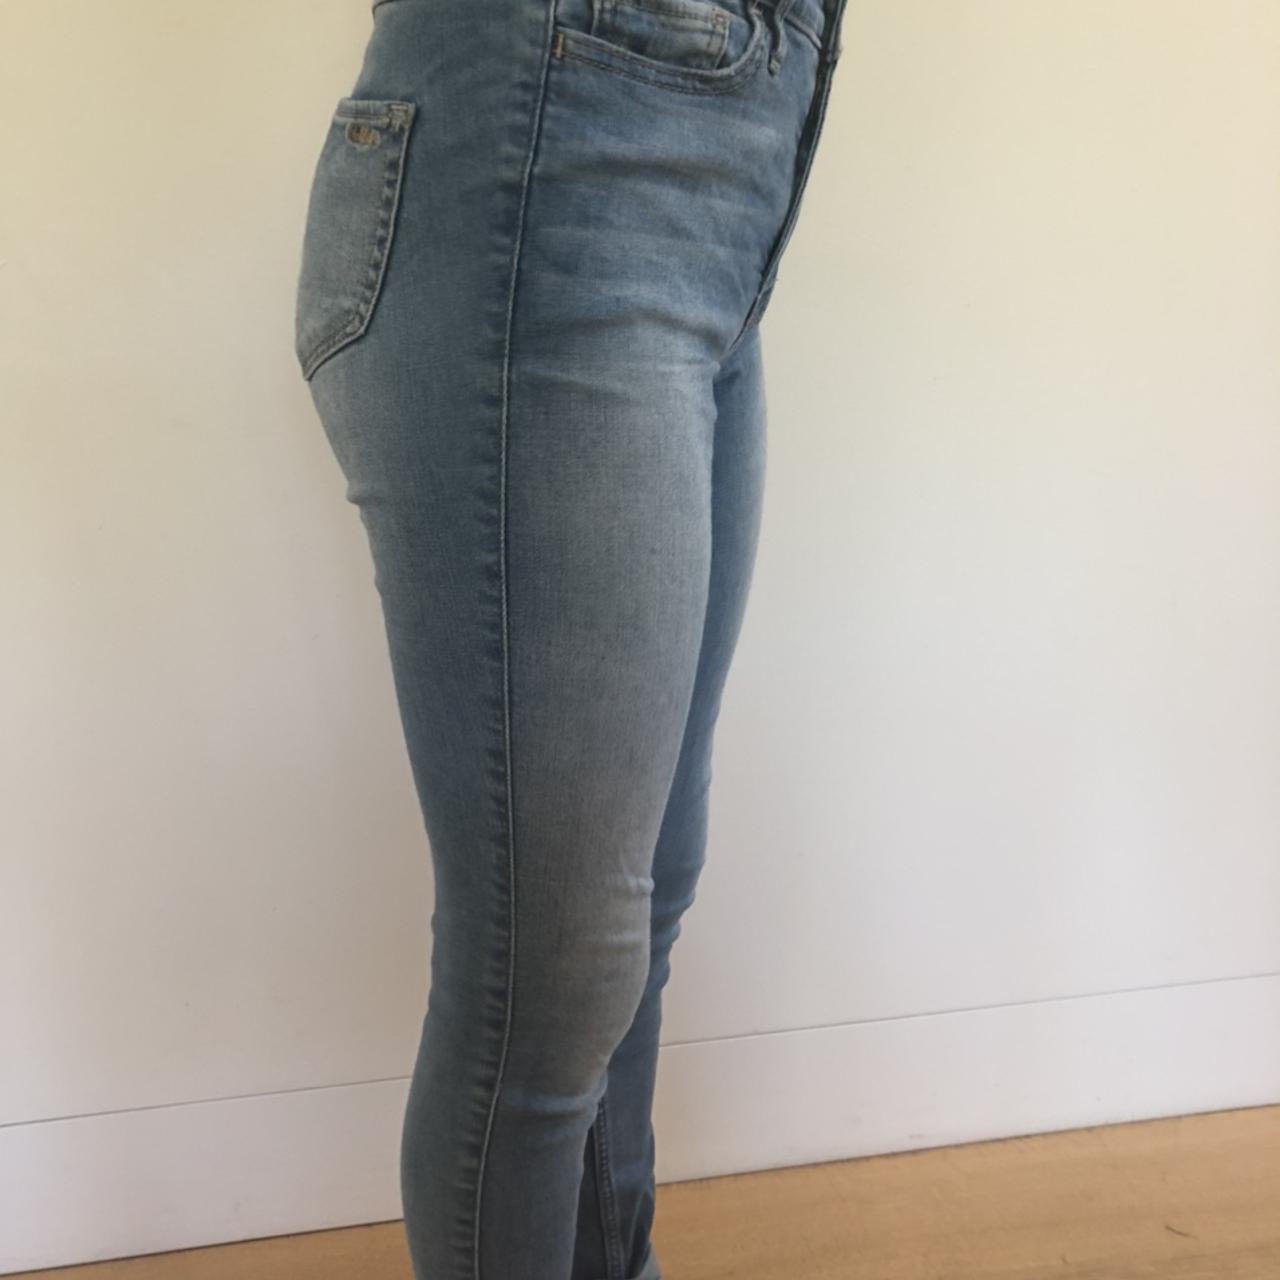 hollister jeans size 25// high rise super skinny//... - Depop